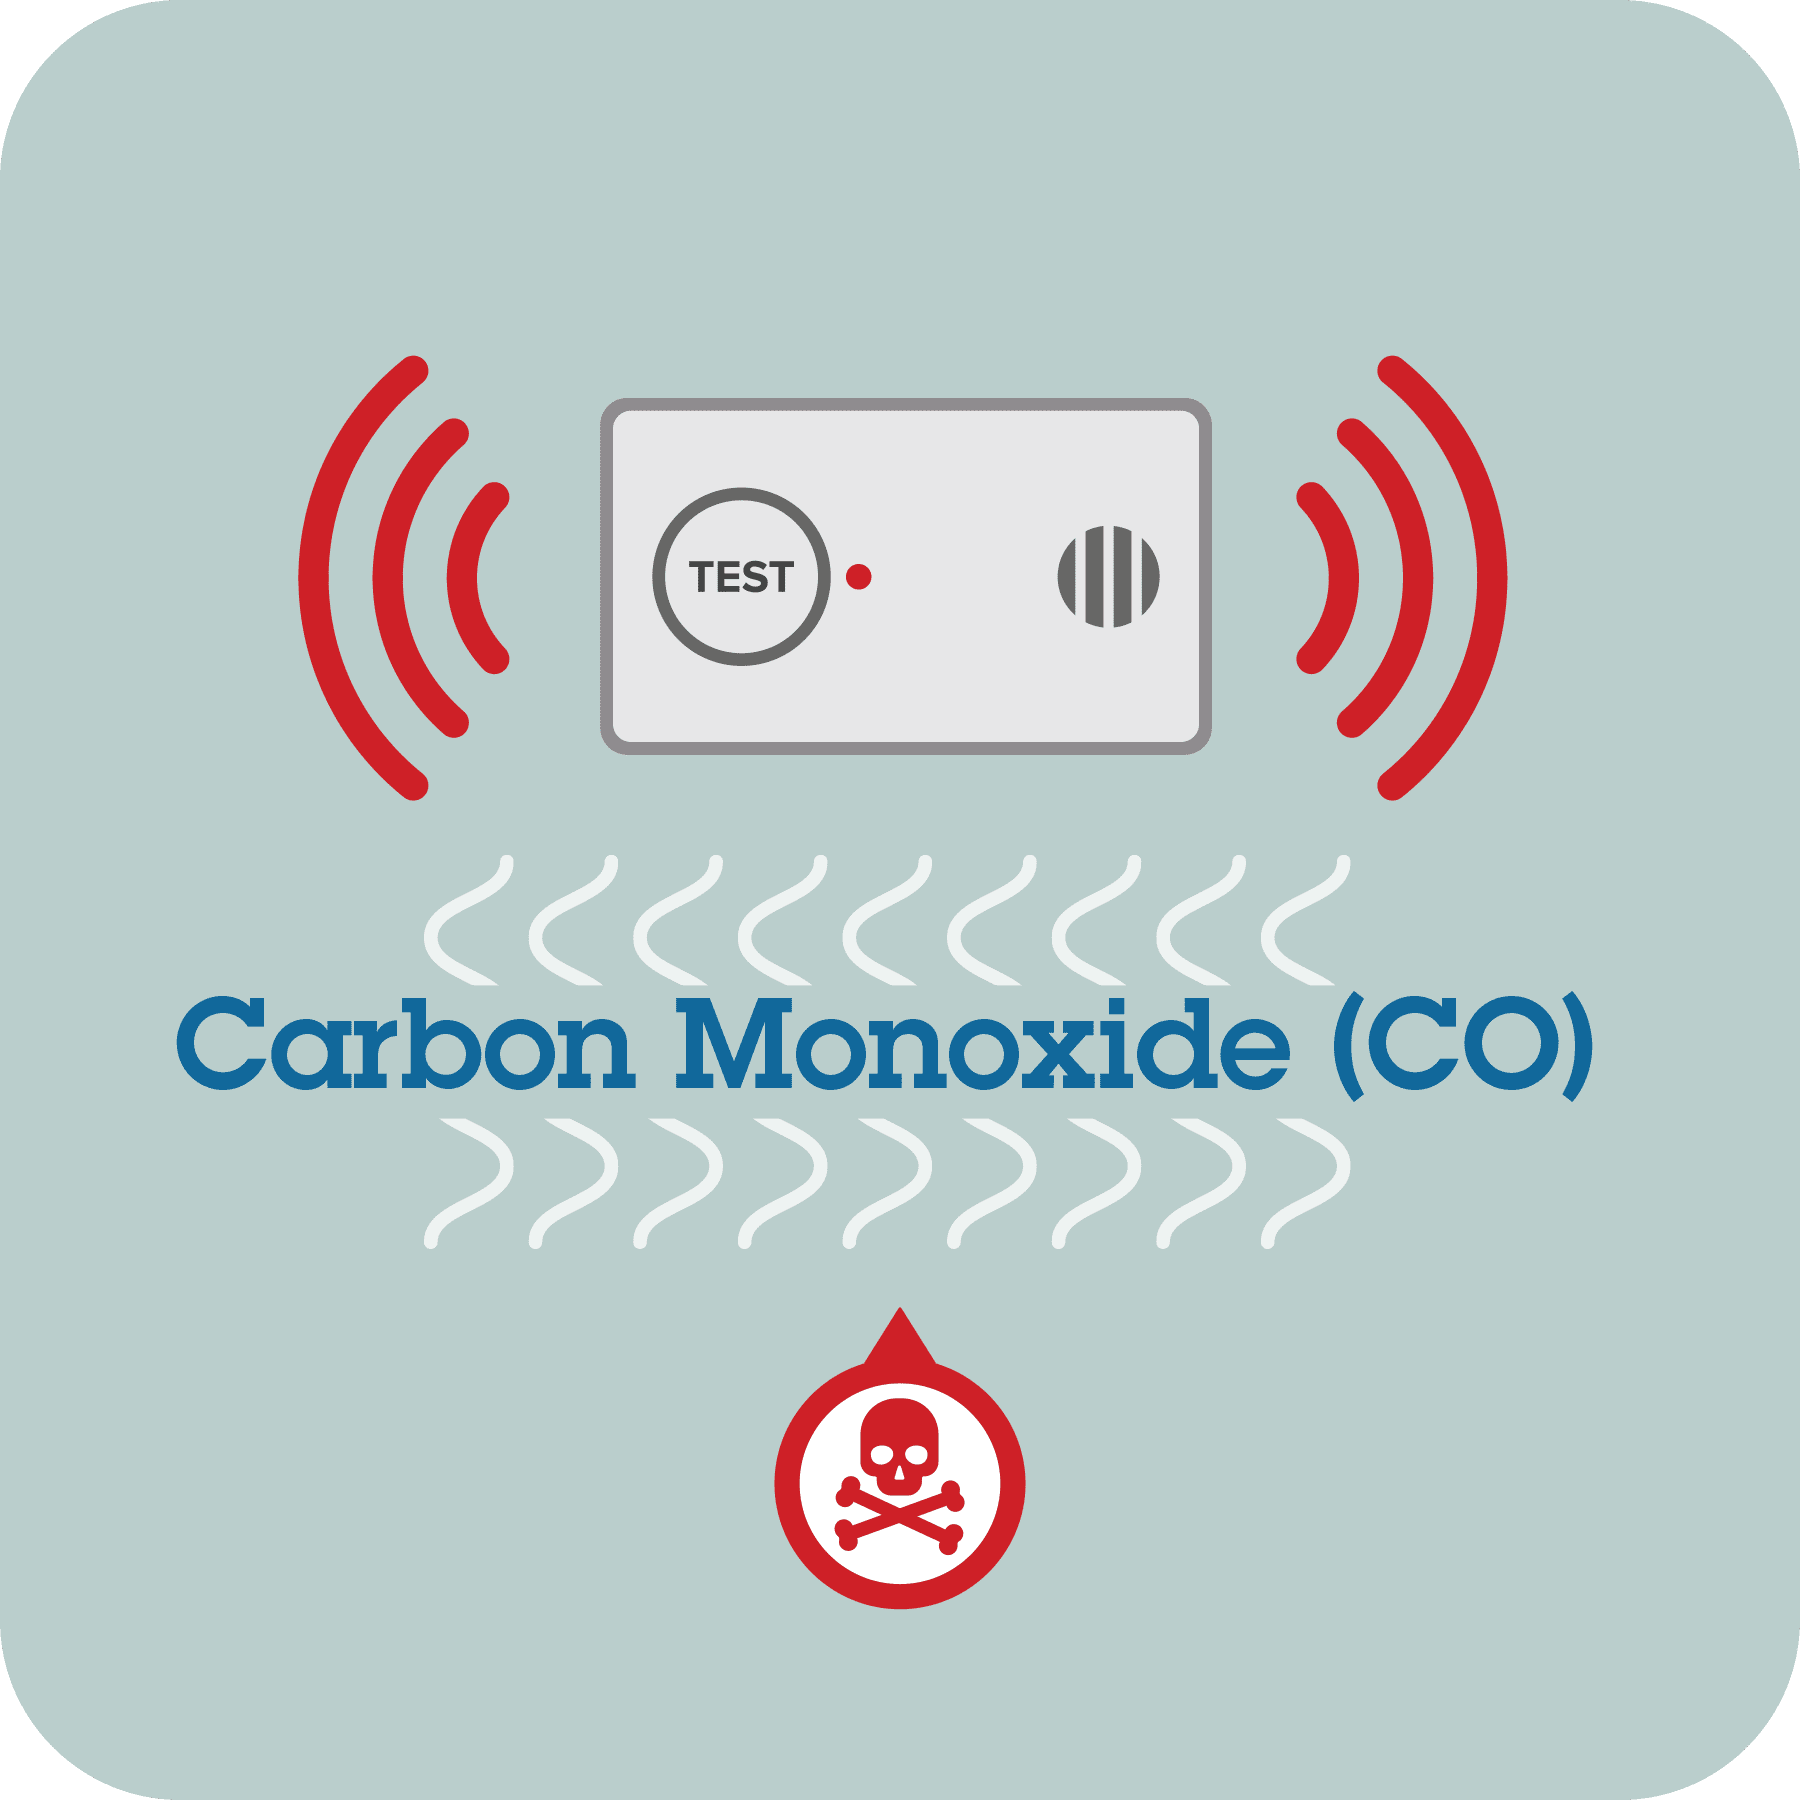 Carbon monoxide alarm sounding.